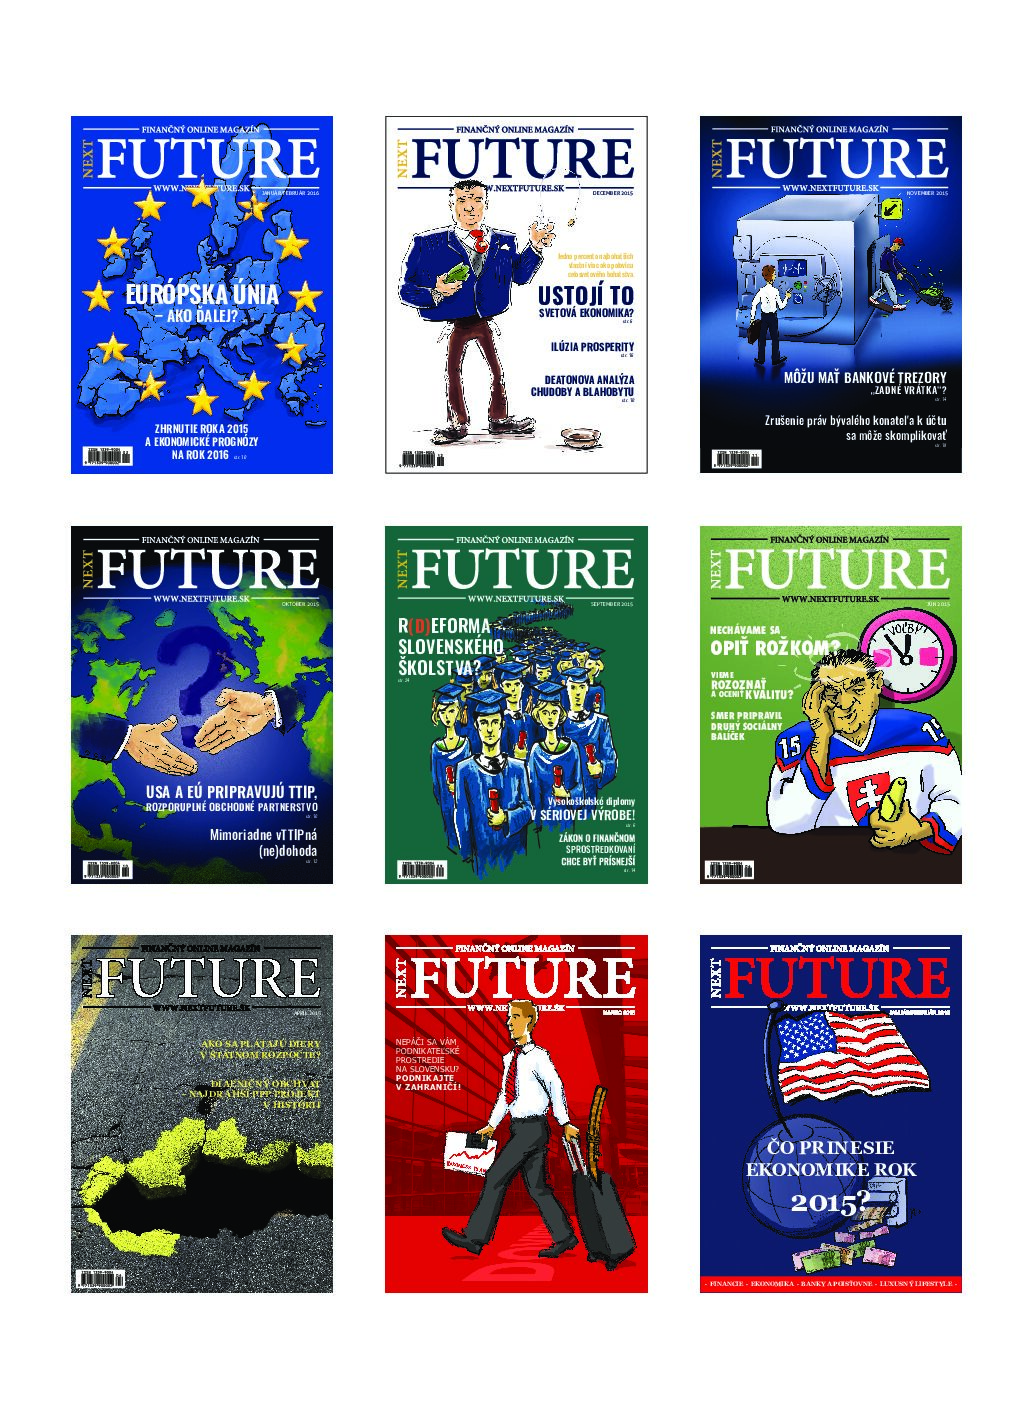 Ilustrácia titulných strán časopisu Next Future